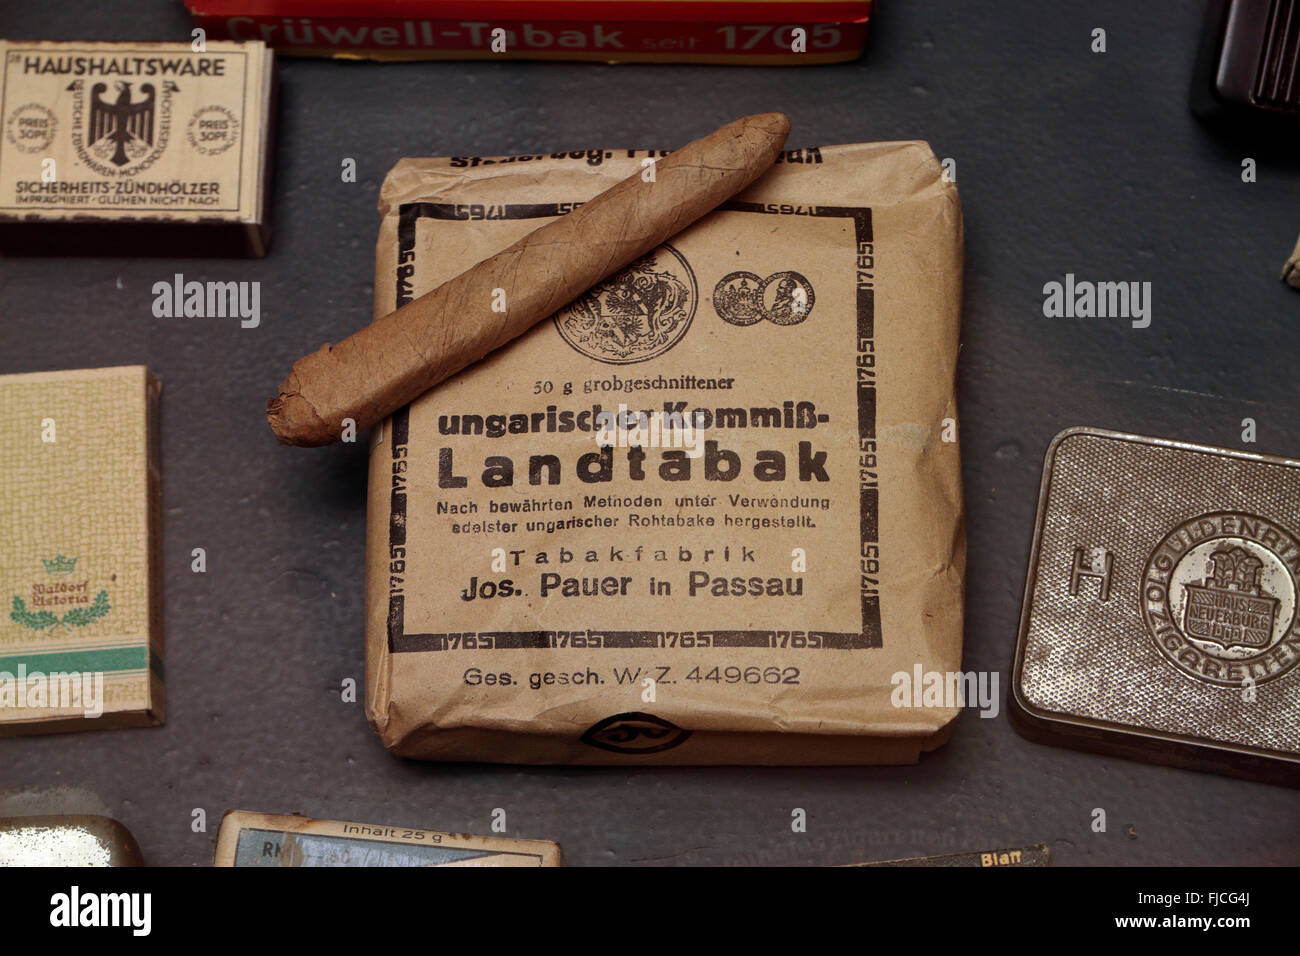 Ein Paket von ungarischen Zigarren (Tabak) auf dem Display in das Kriegsmuseum Overloon in Overloon, Niederlande. Stockfoto